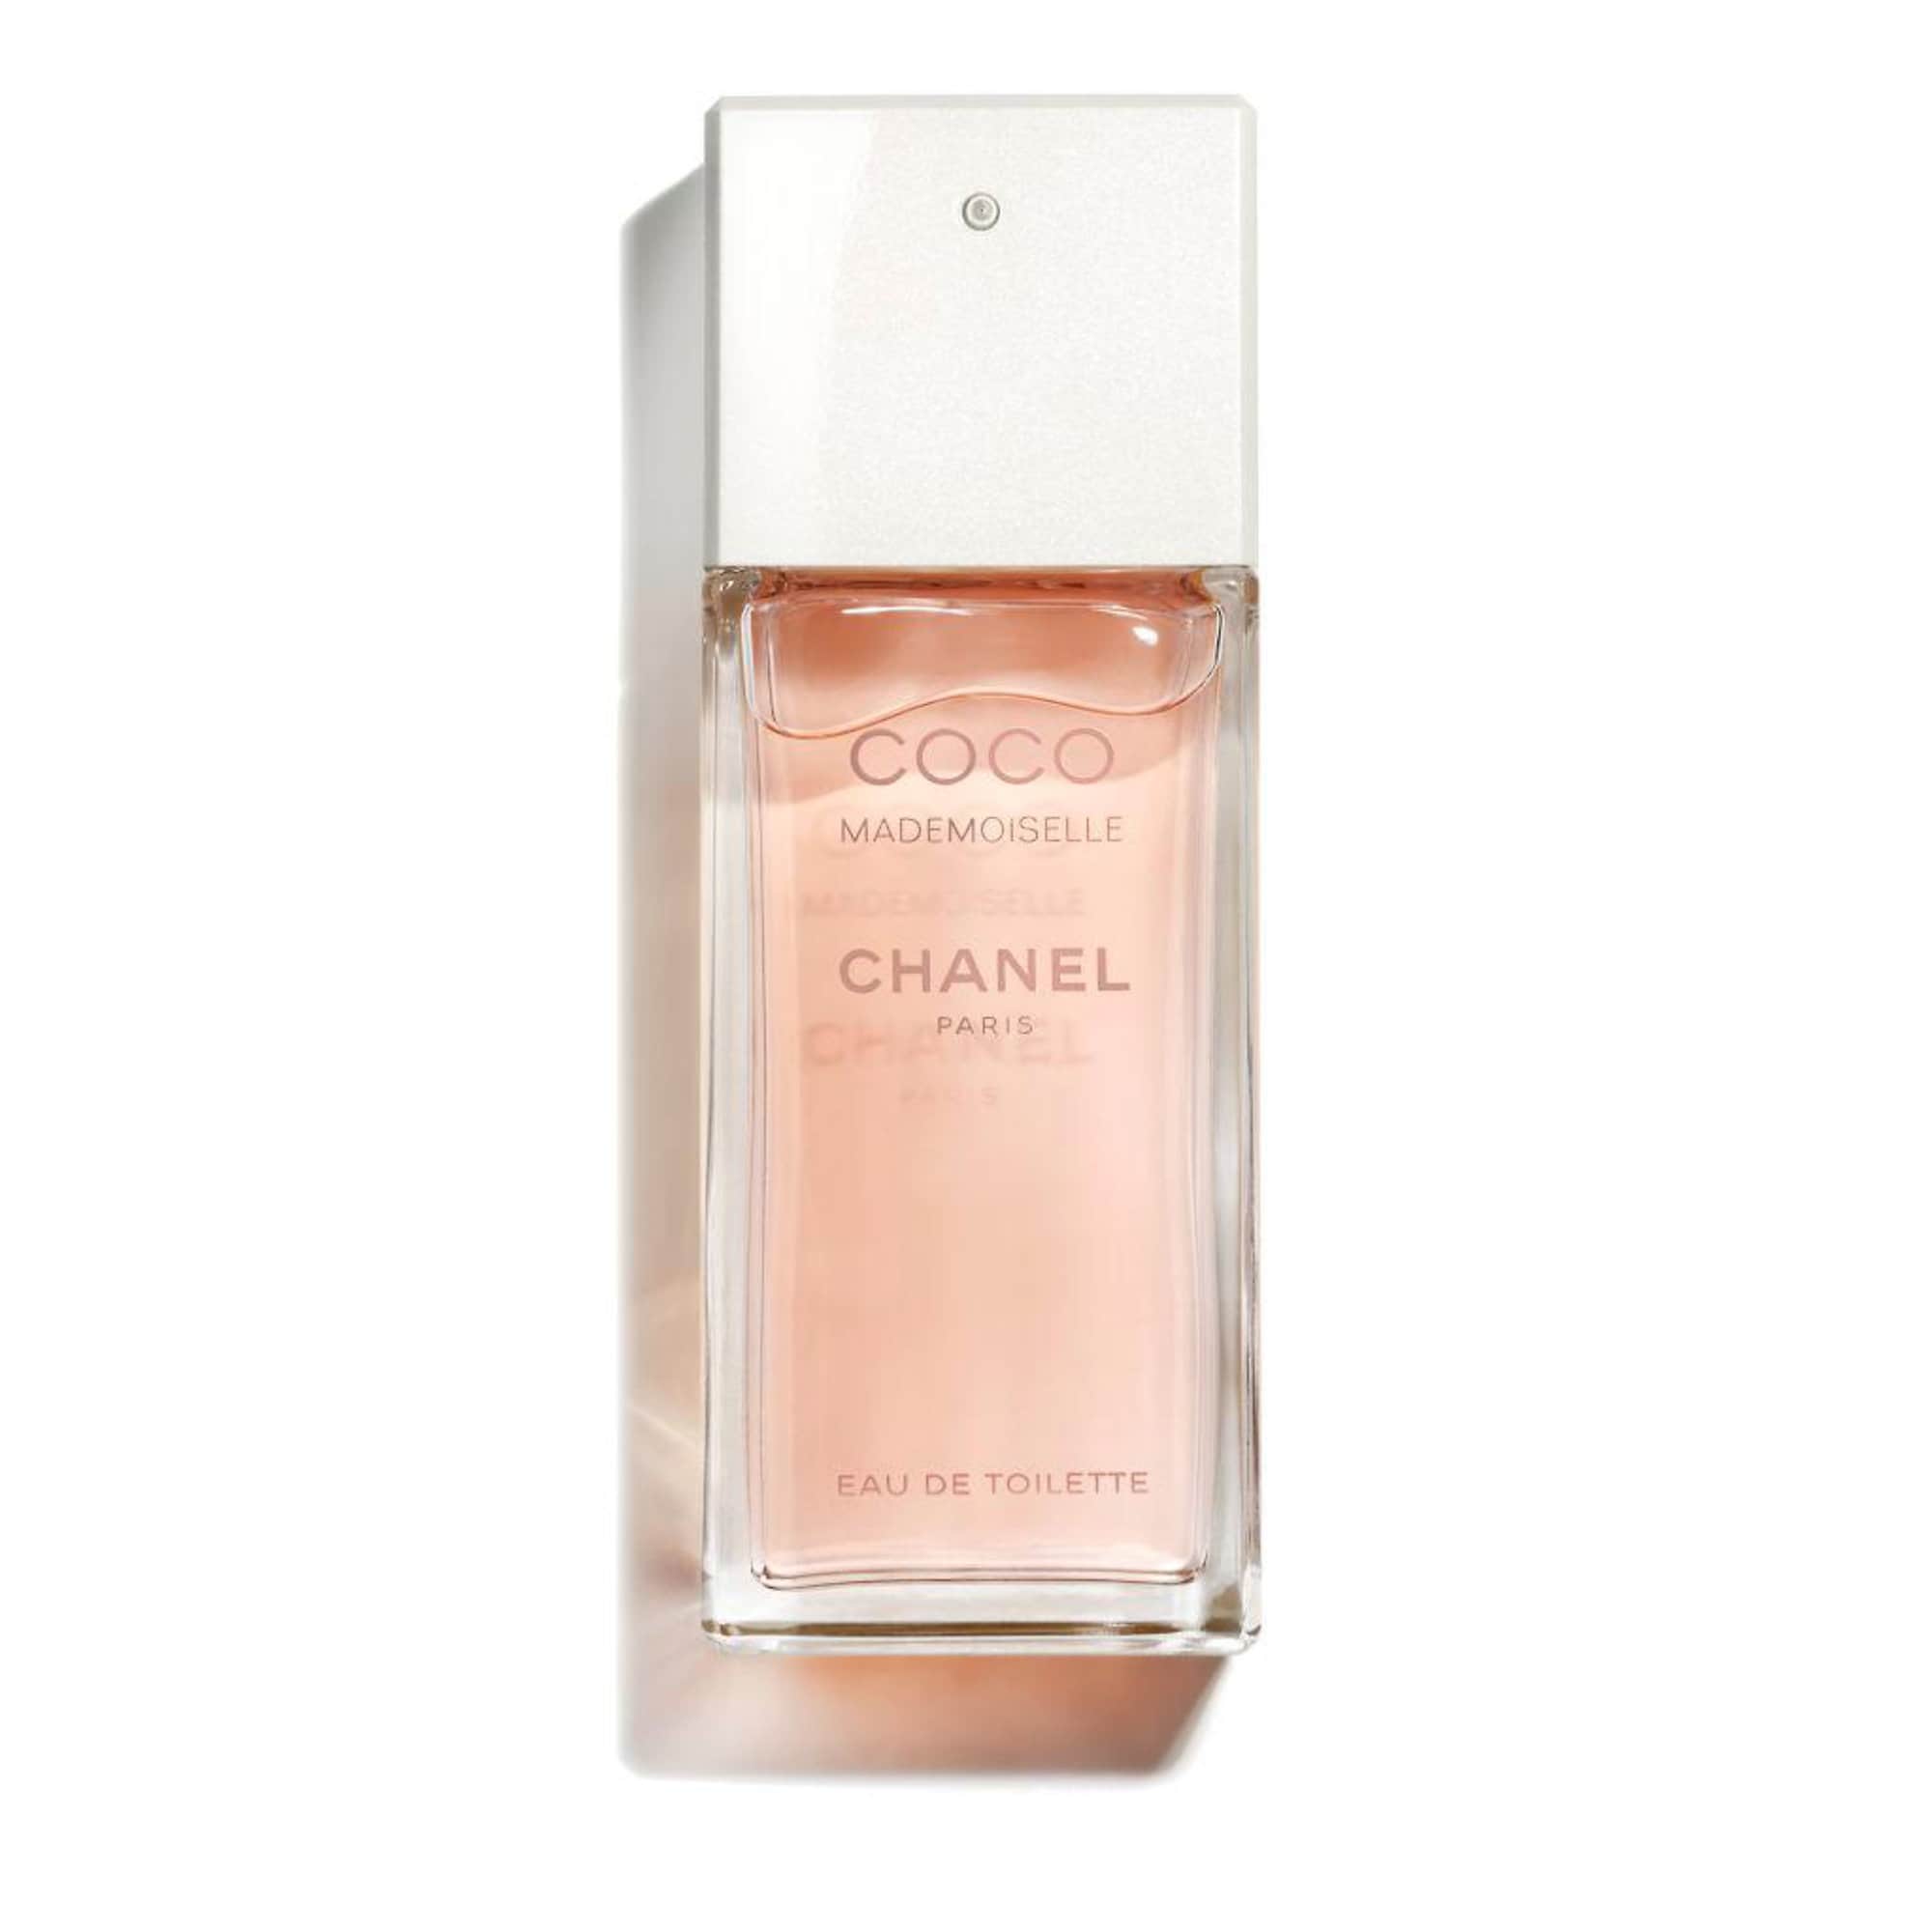 CHANEL COCO Perfume Review - Eau de Parfum Fragrance Impressions